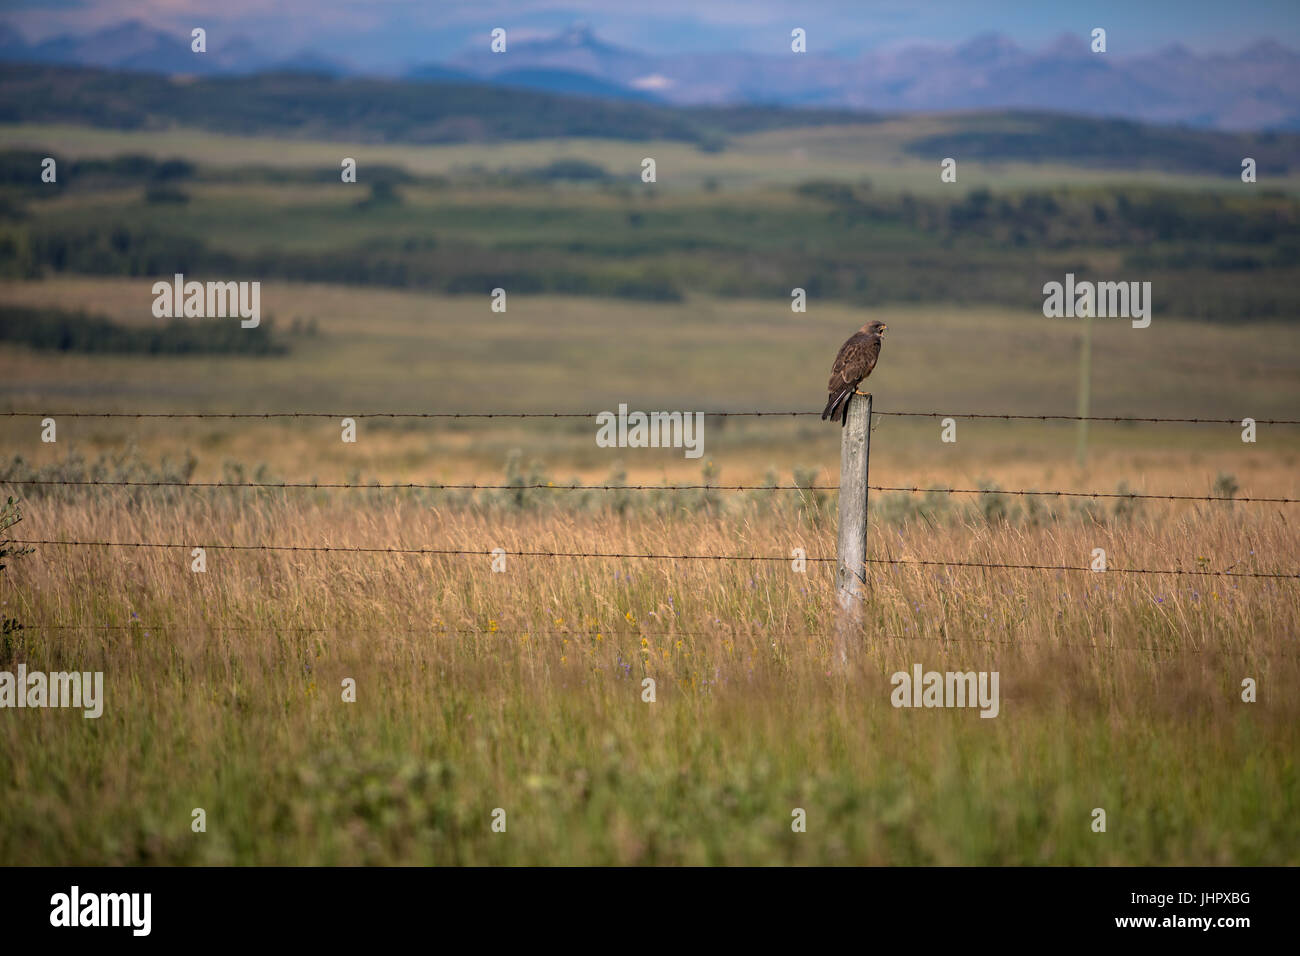 Un très large red-tailed hawk se trouve perché sur le poteau de clôture à la recherche de proies au petit matin. Banque D'Images